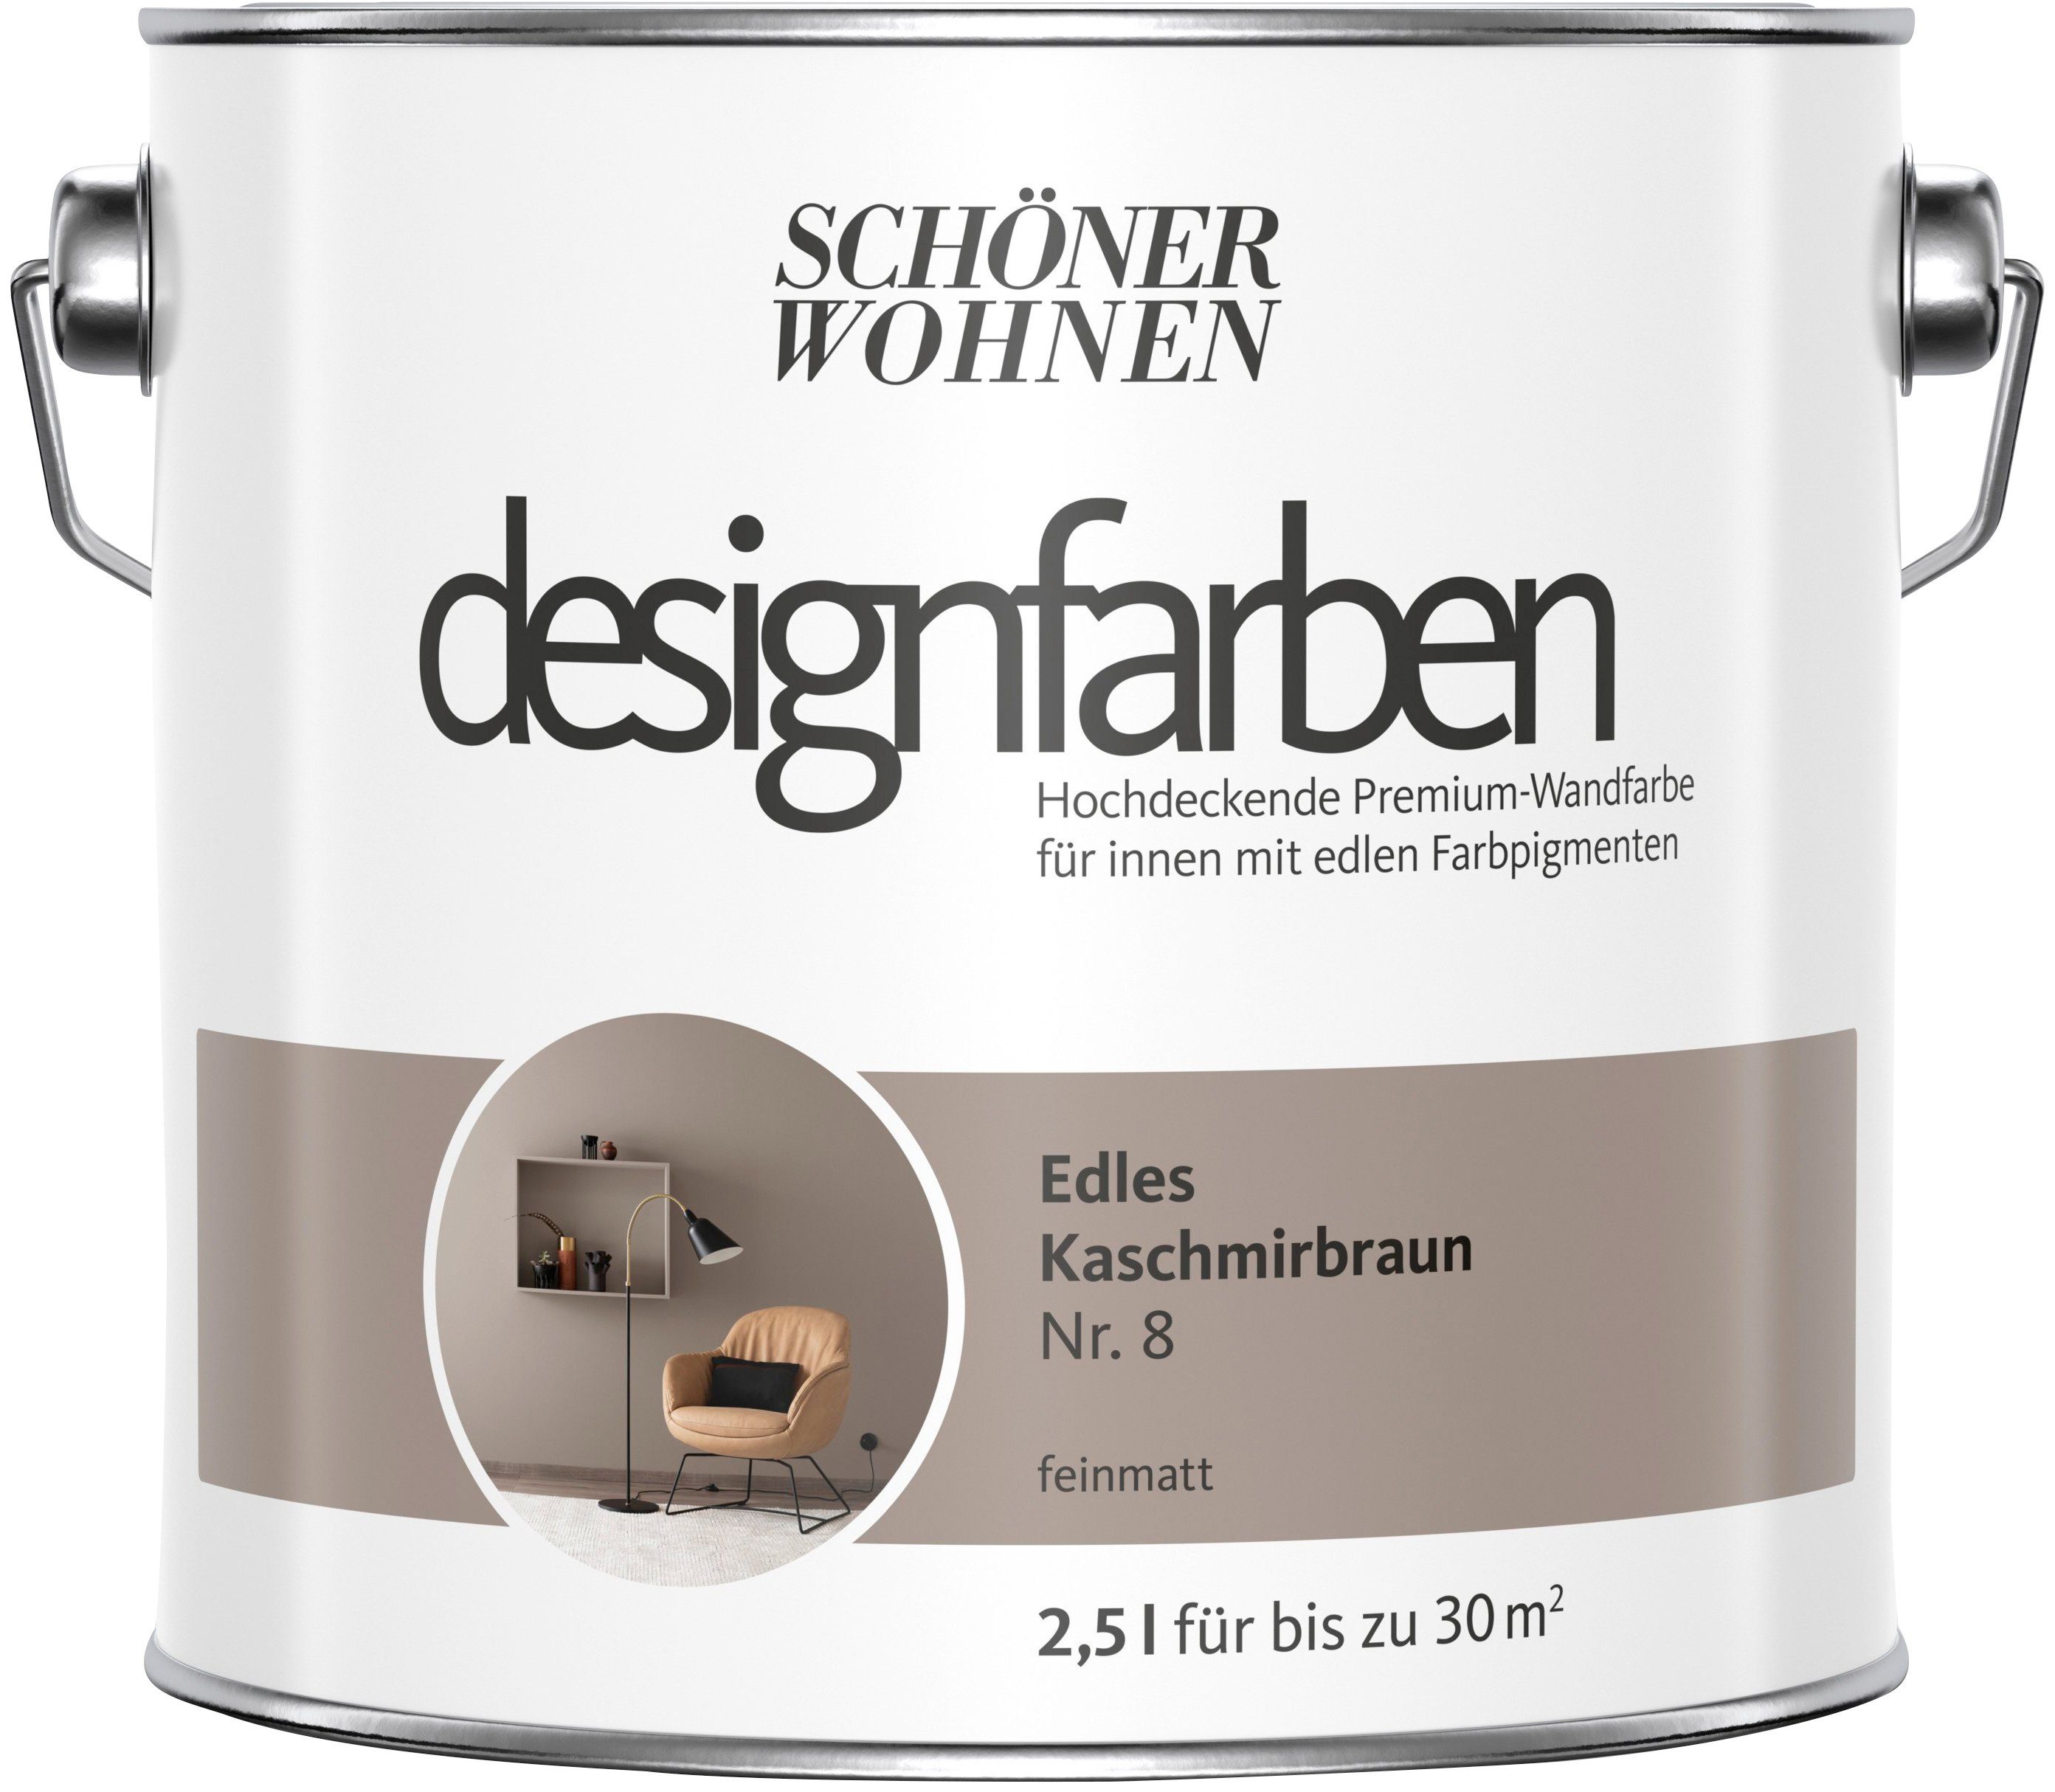 SCHÖNER WOHNEN FARBE Wand- und Deckenfarbe designfarben, 2,5 Liter, Edles Kaschmirbraun Nr. 8, hochdeckende Premium-Wandfarbe